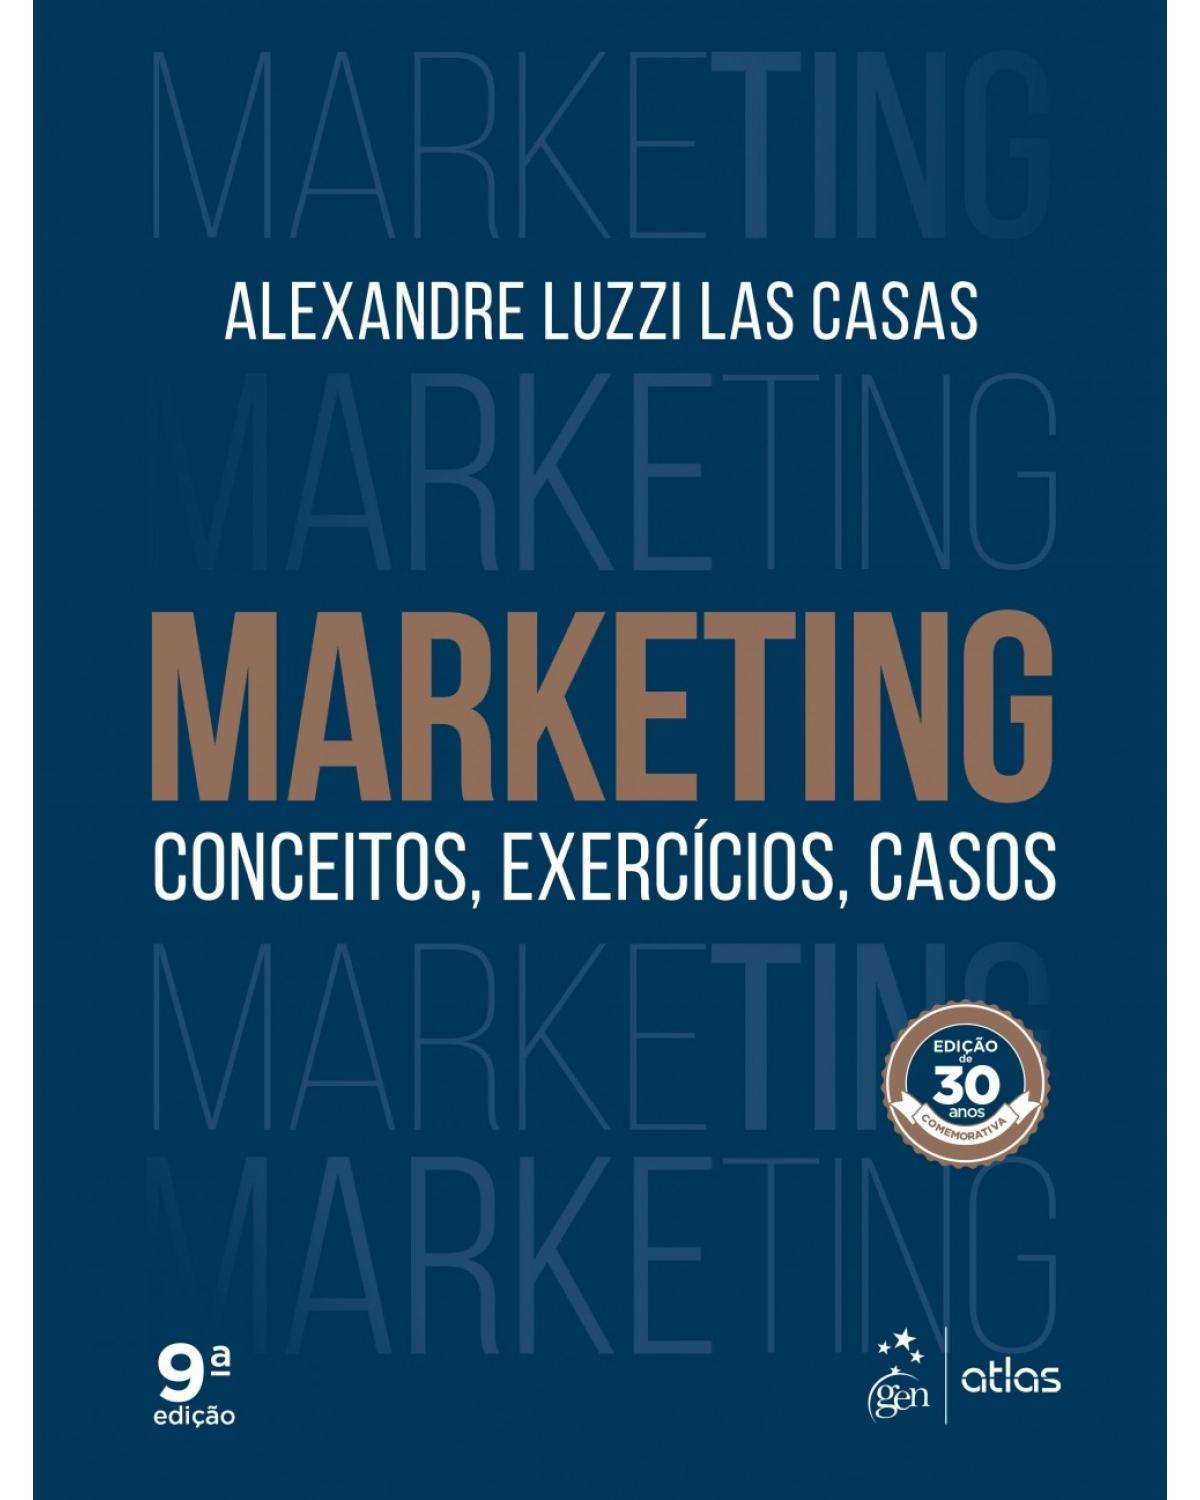 Marketing - conceitos, exercícios, casos - 9ª Edição | 2017